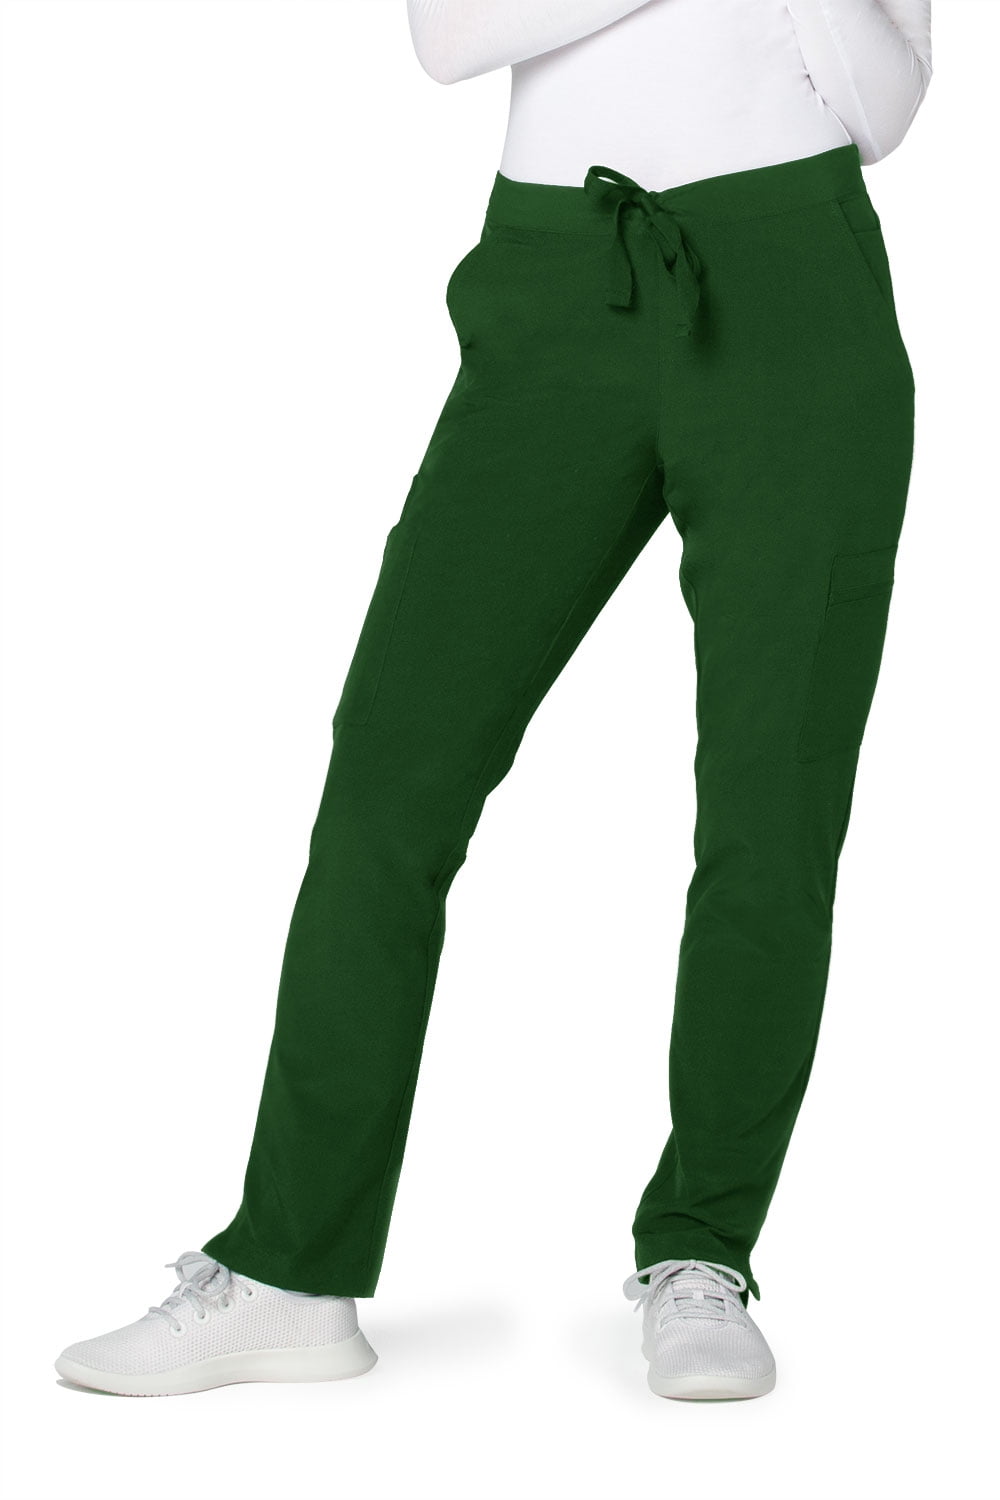 Adar Addition Scrubs For Women - Skinny Cargo Scrub Pants - Walmart.com